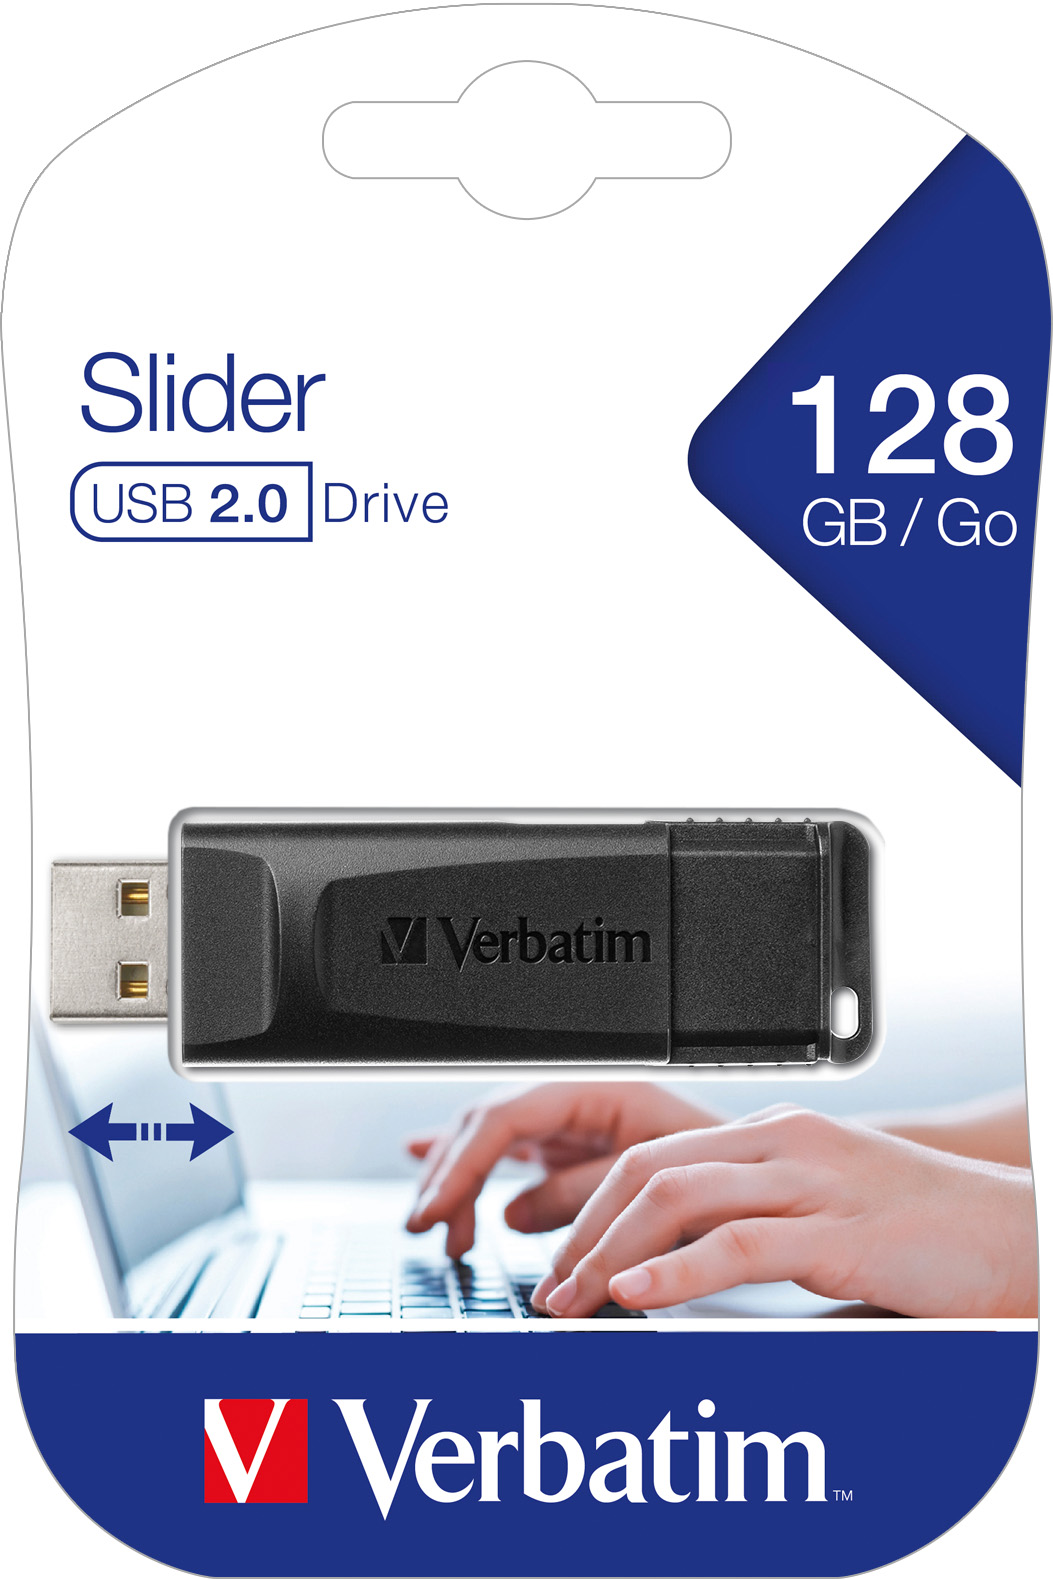 Verbatim USB 2.0 Stick 128GB, Slider (R) 10MB/s, (W) 4MB/s, Retail-Blister